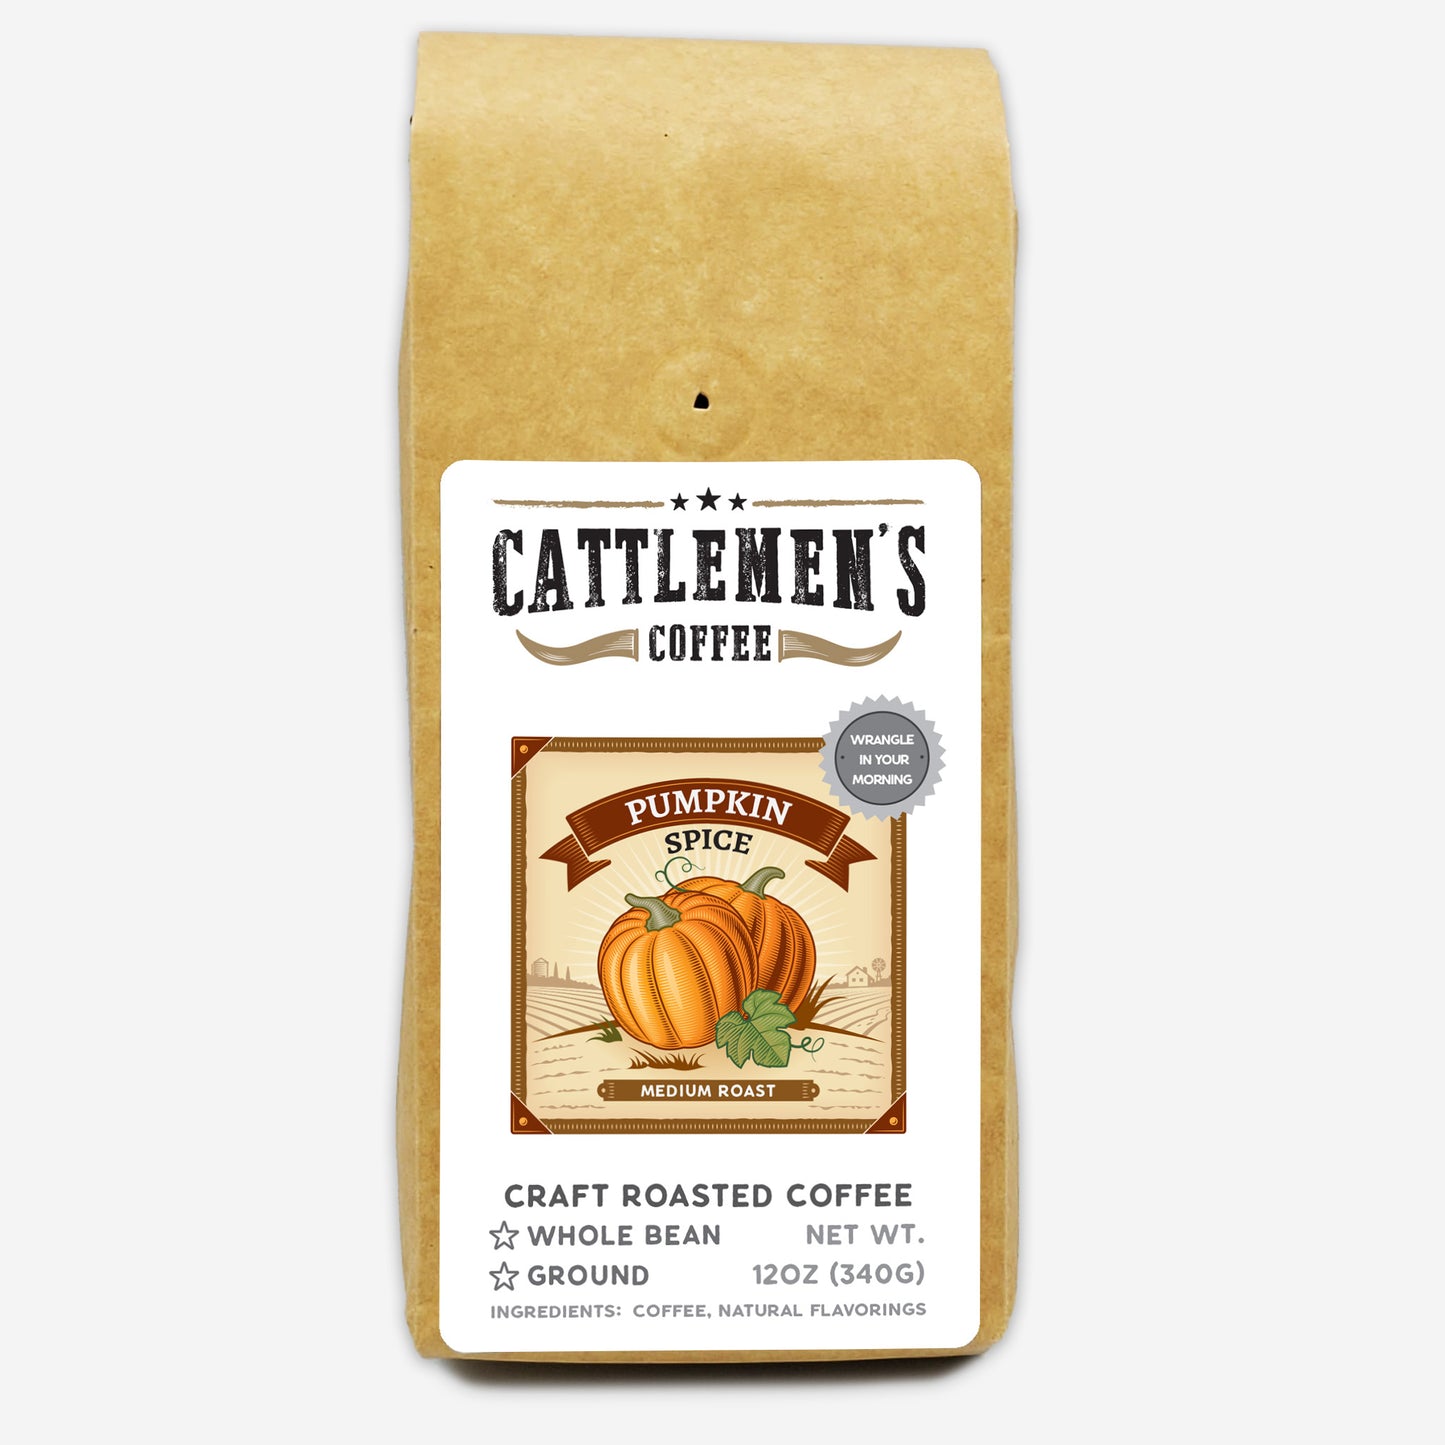 Pumpkin Spice Coffee by Cattlemen's